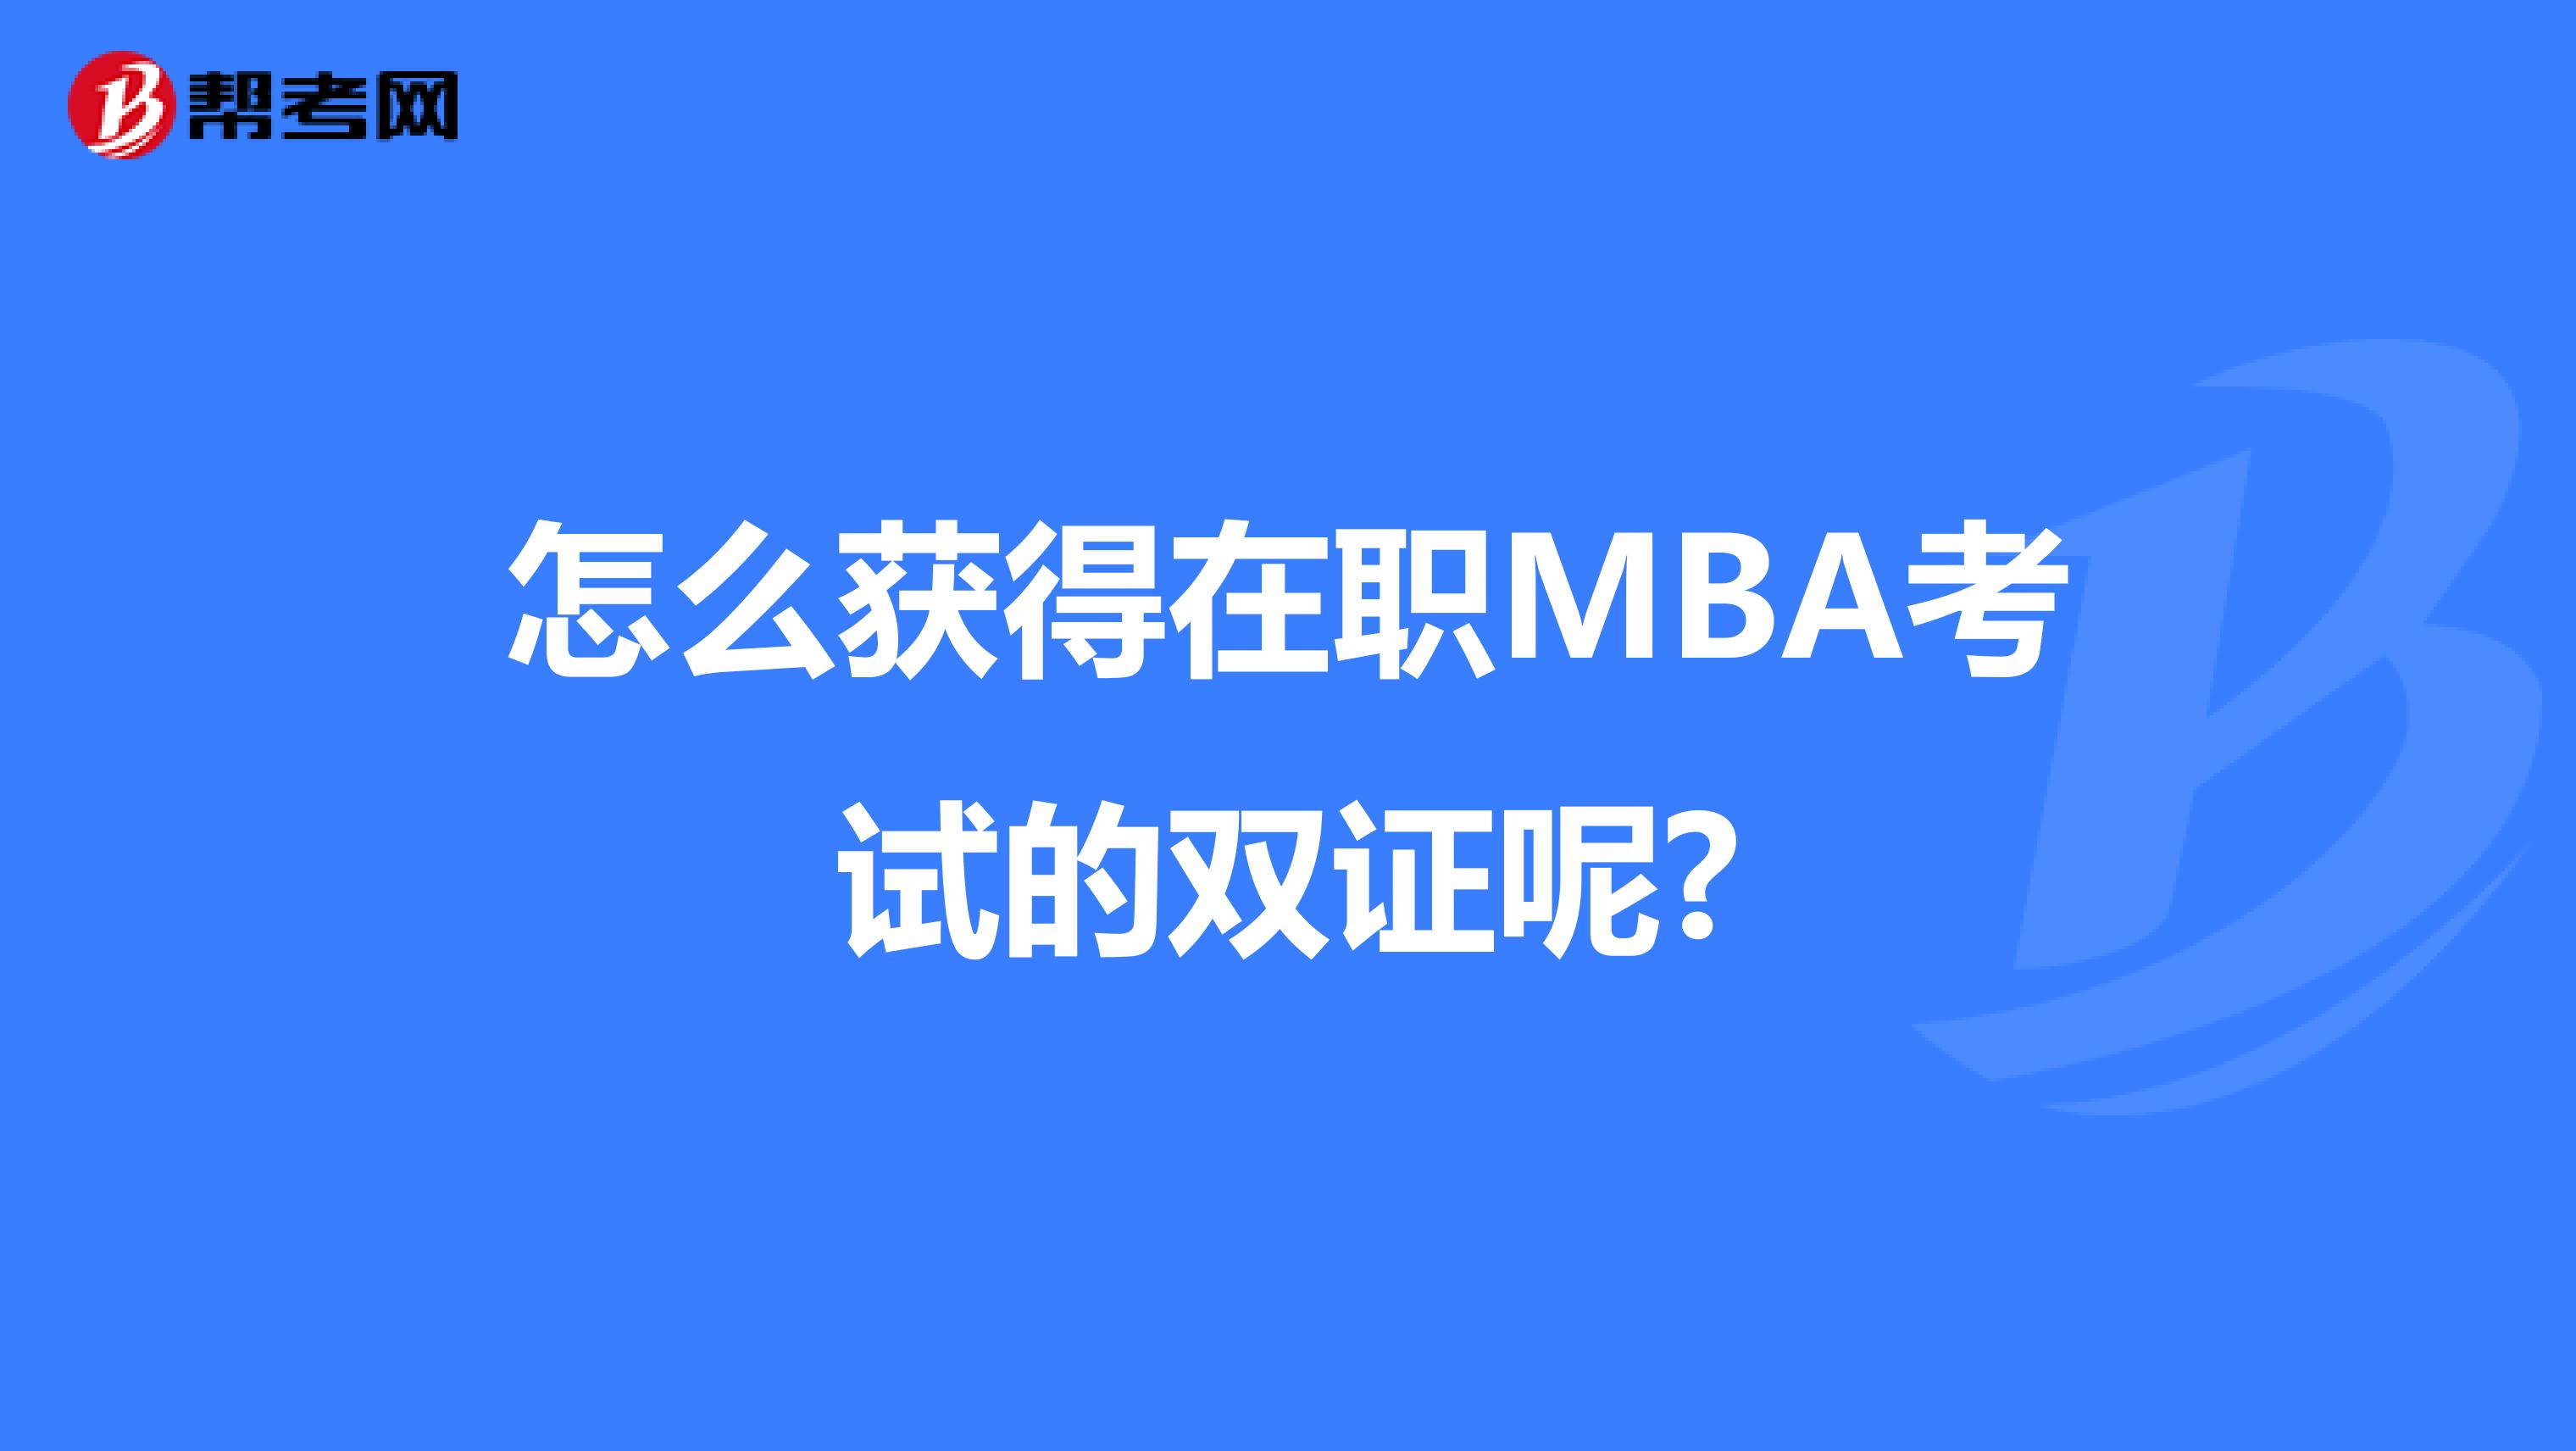 怎么获得在职MBA考试的双证呢?